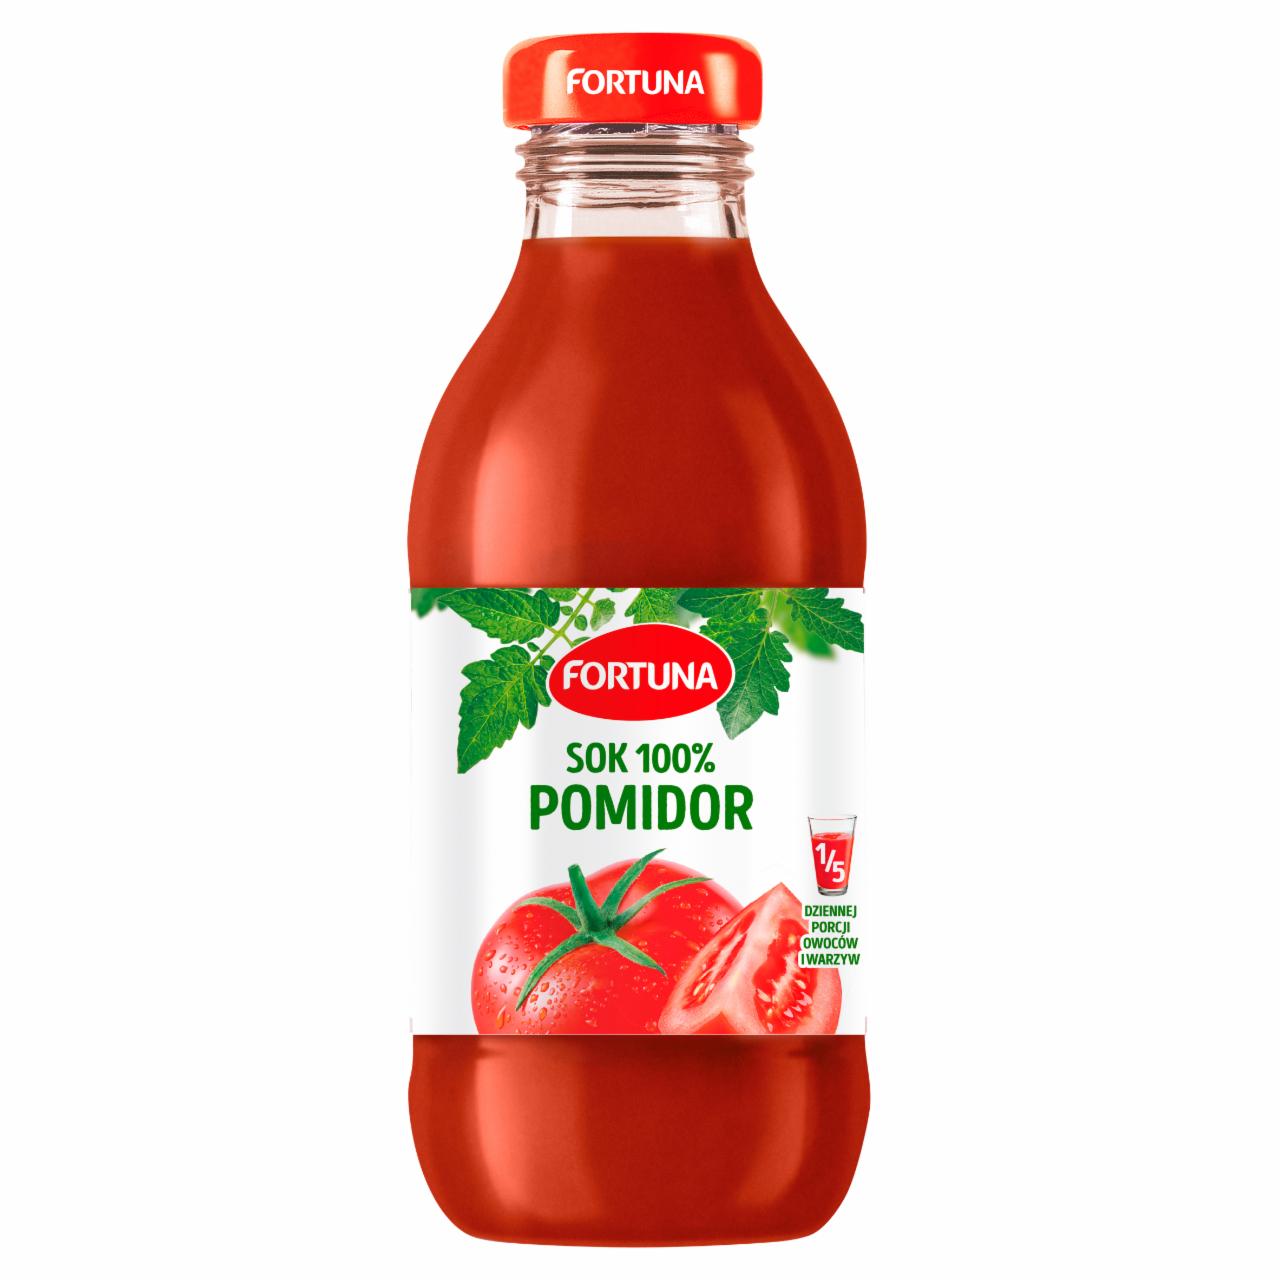 Zdjęcia - Fortuna sok pomidorowy 